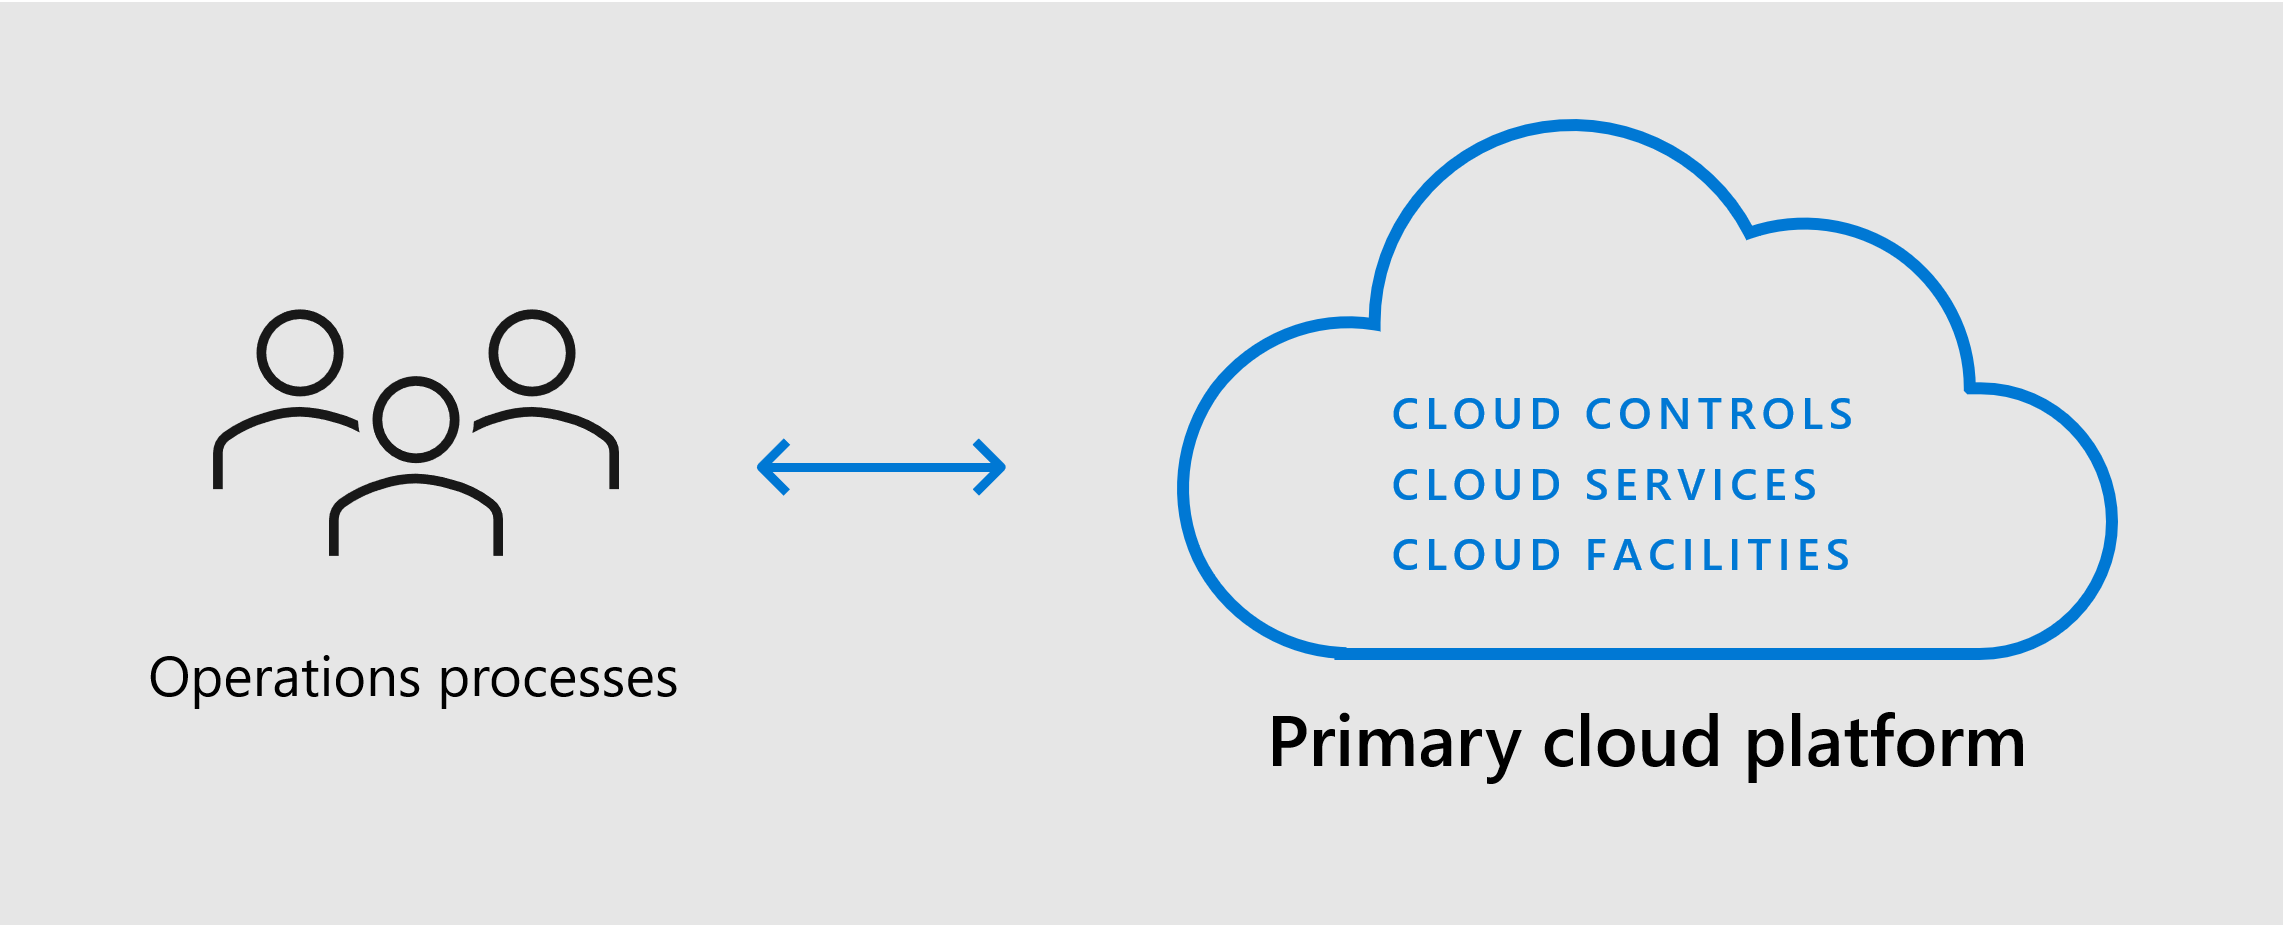 Diagramma che mostra la piattaforma cloud primaria con strutture, servizi e controlli per supportare i processi.